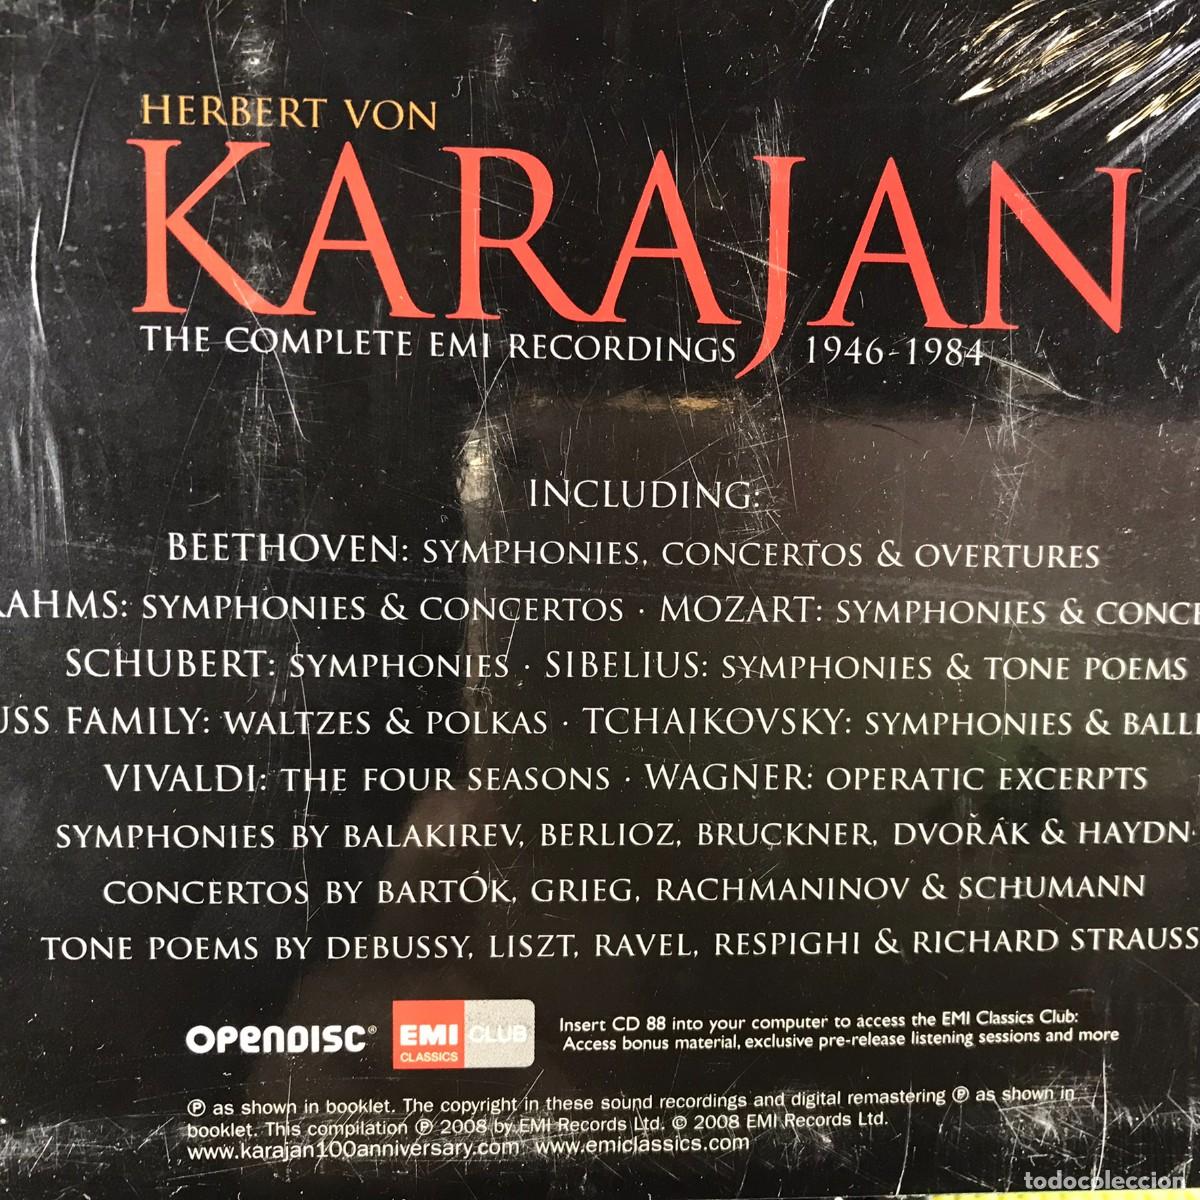 karajan ○ complete emi recordings 1946-1984. vo - Buy CD's of